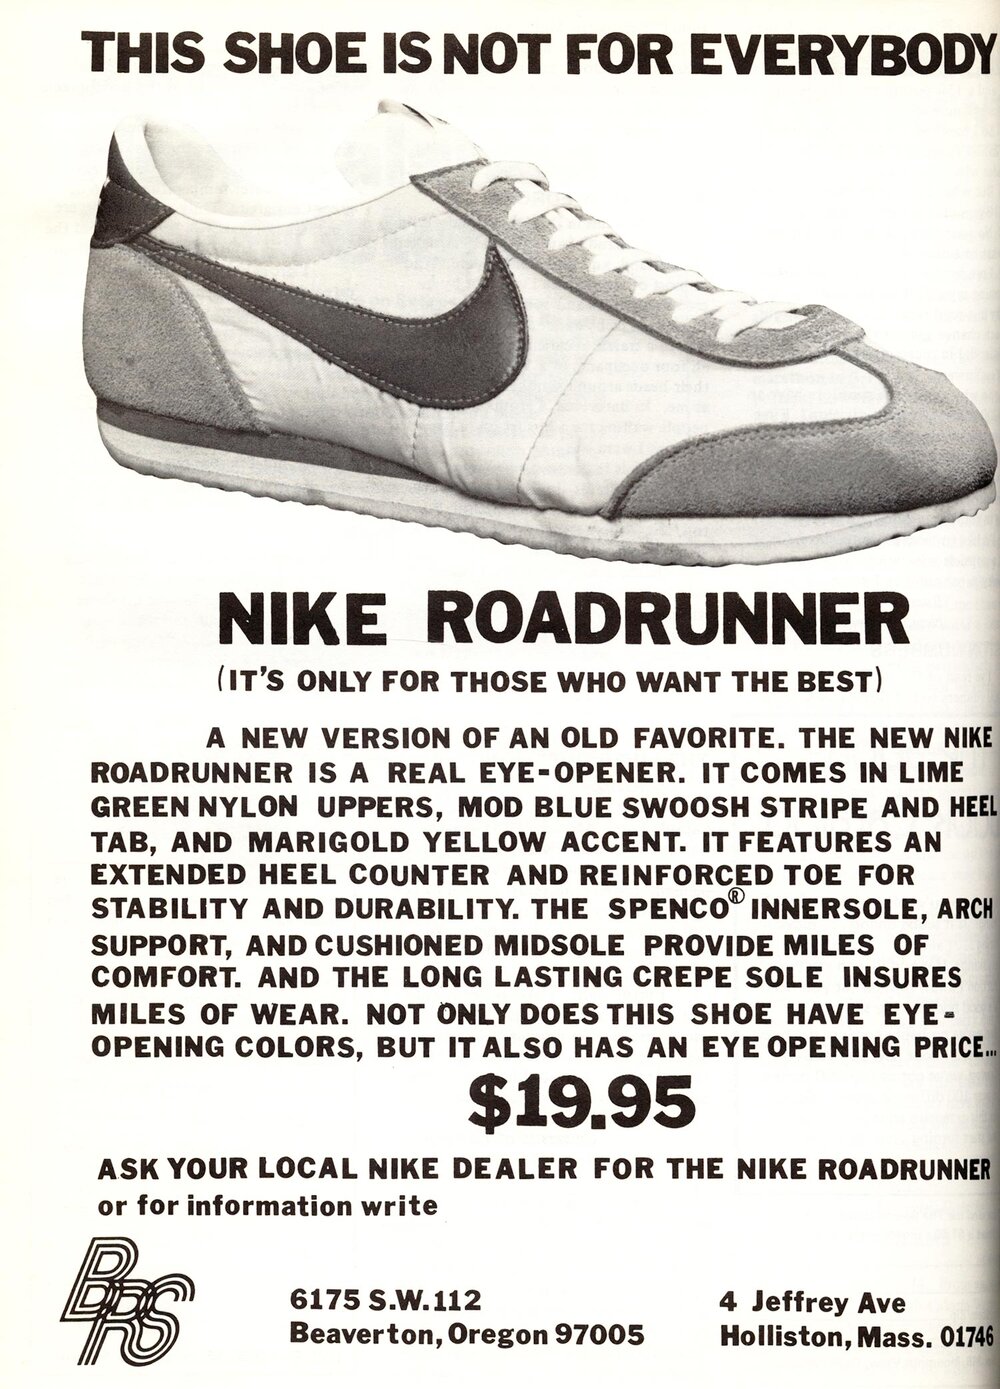 The Deffest®. A vintage retro sneaker — Nike Roadrunner 1970s vintage sneakers